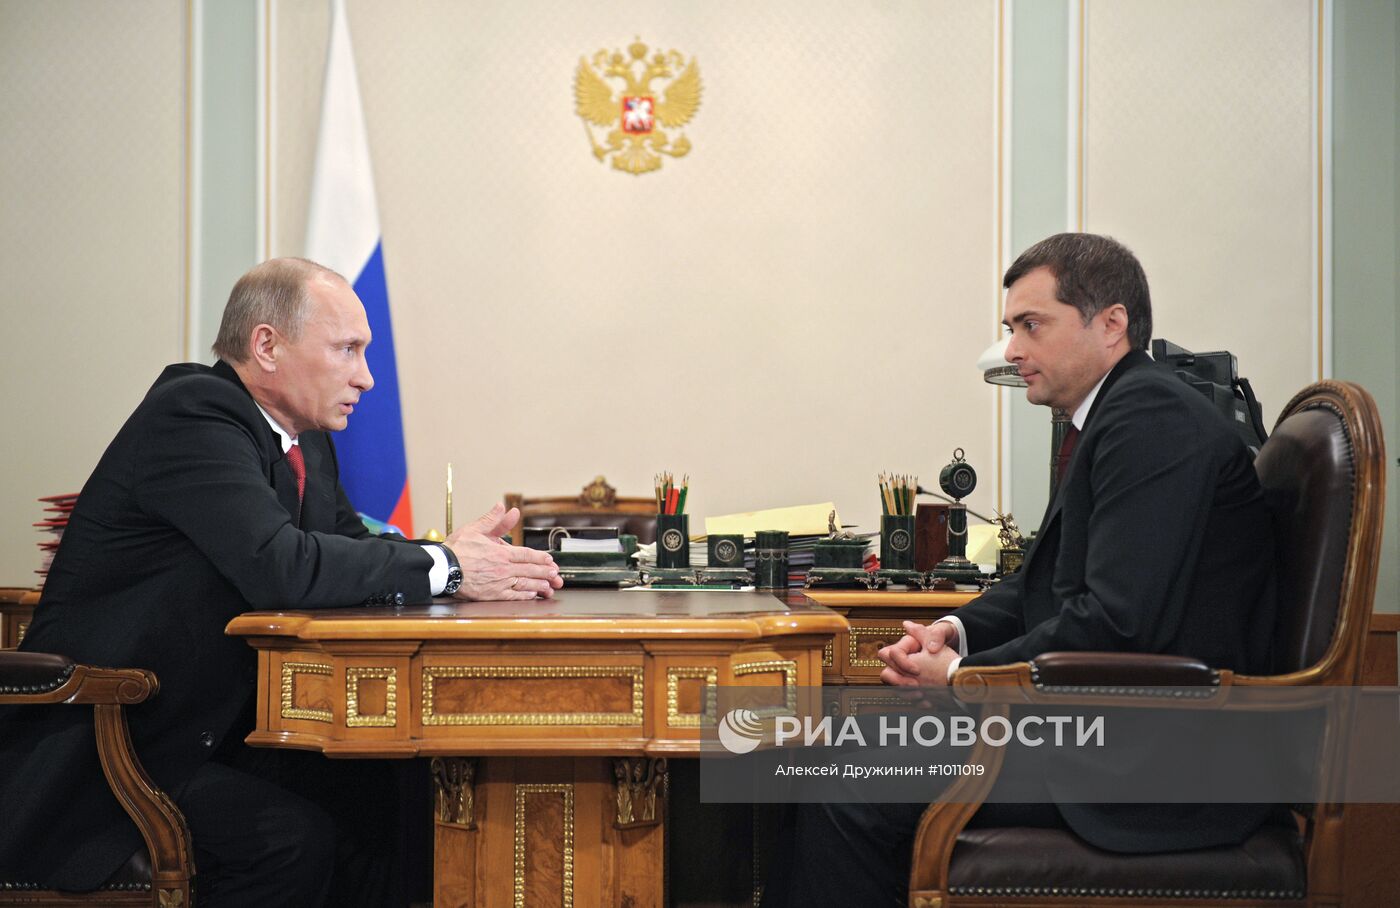 Встреча Владимира Путина с Владиславом Сурковым